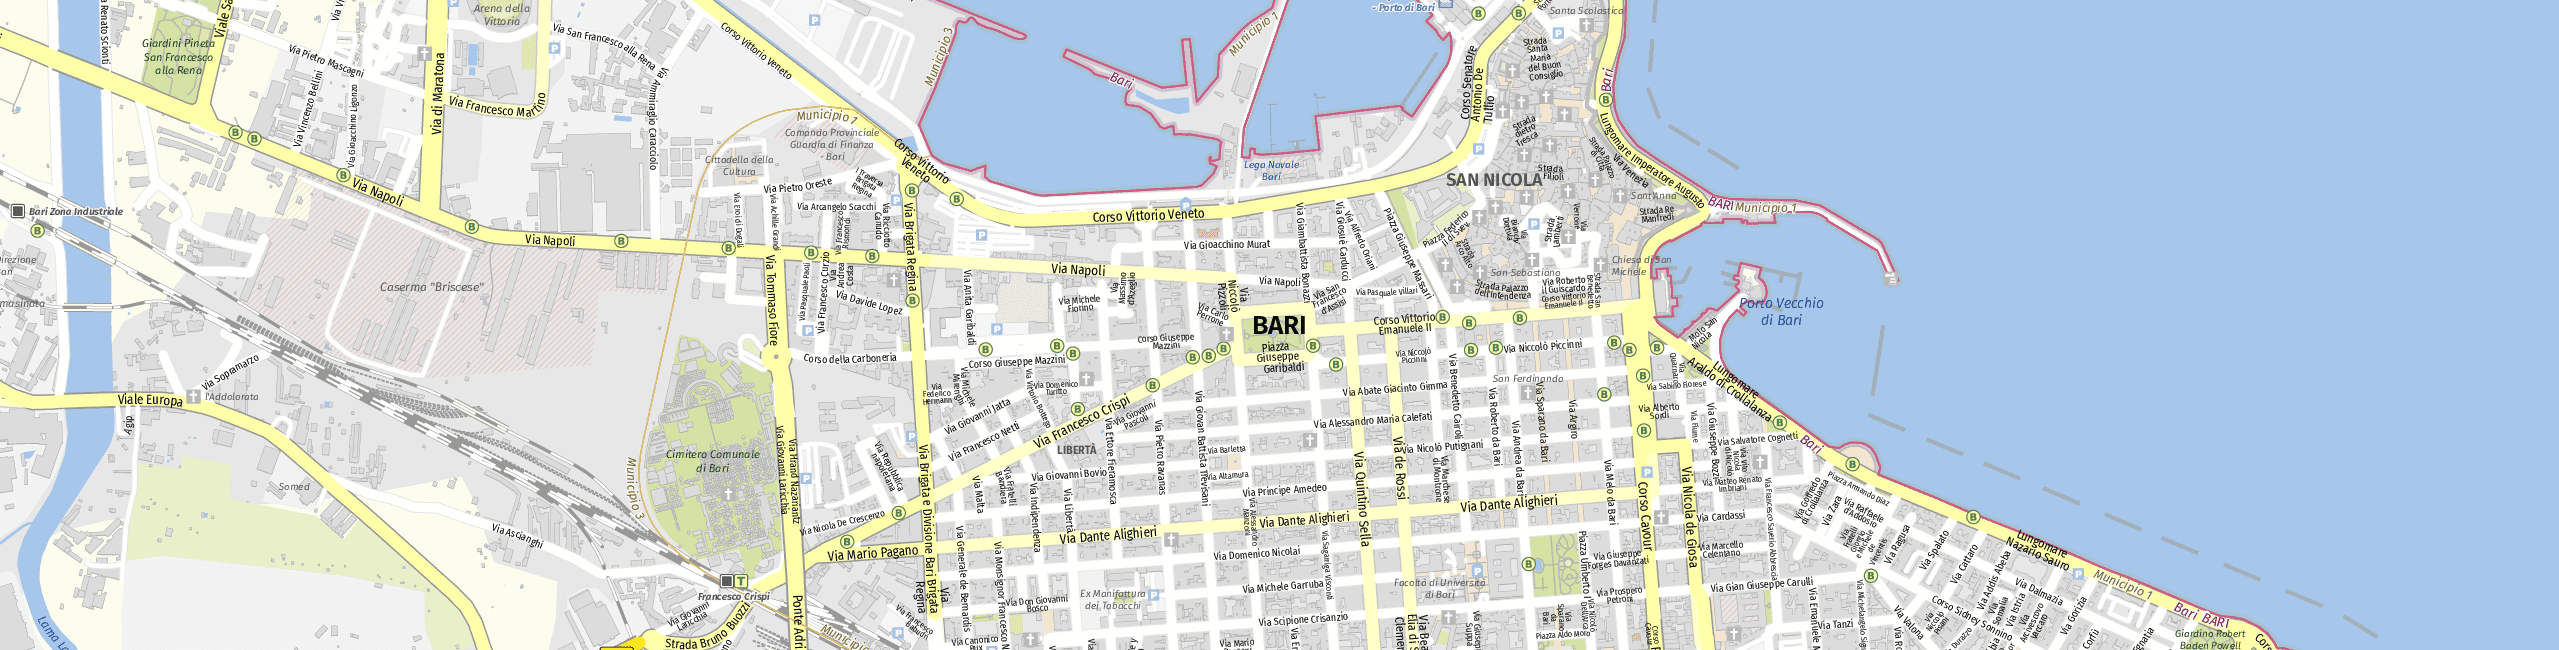 Stadtplan Bari zum Downloaden.